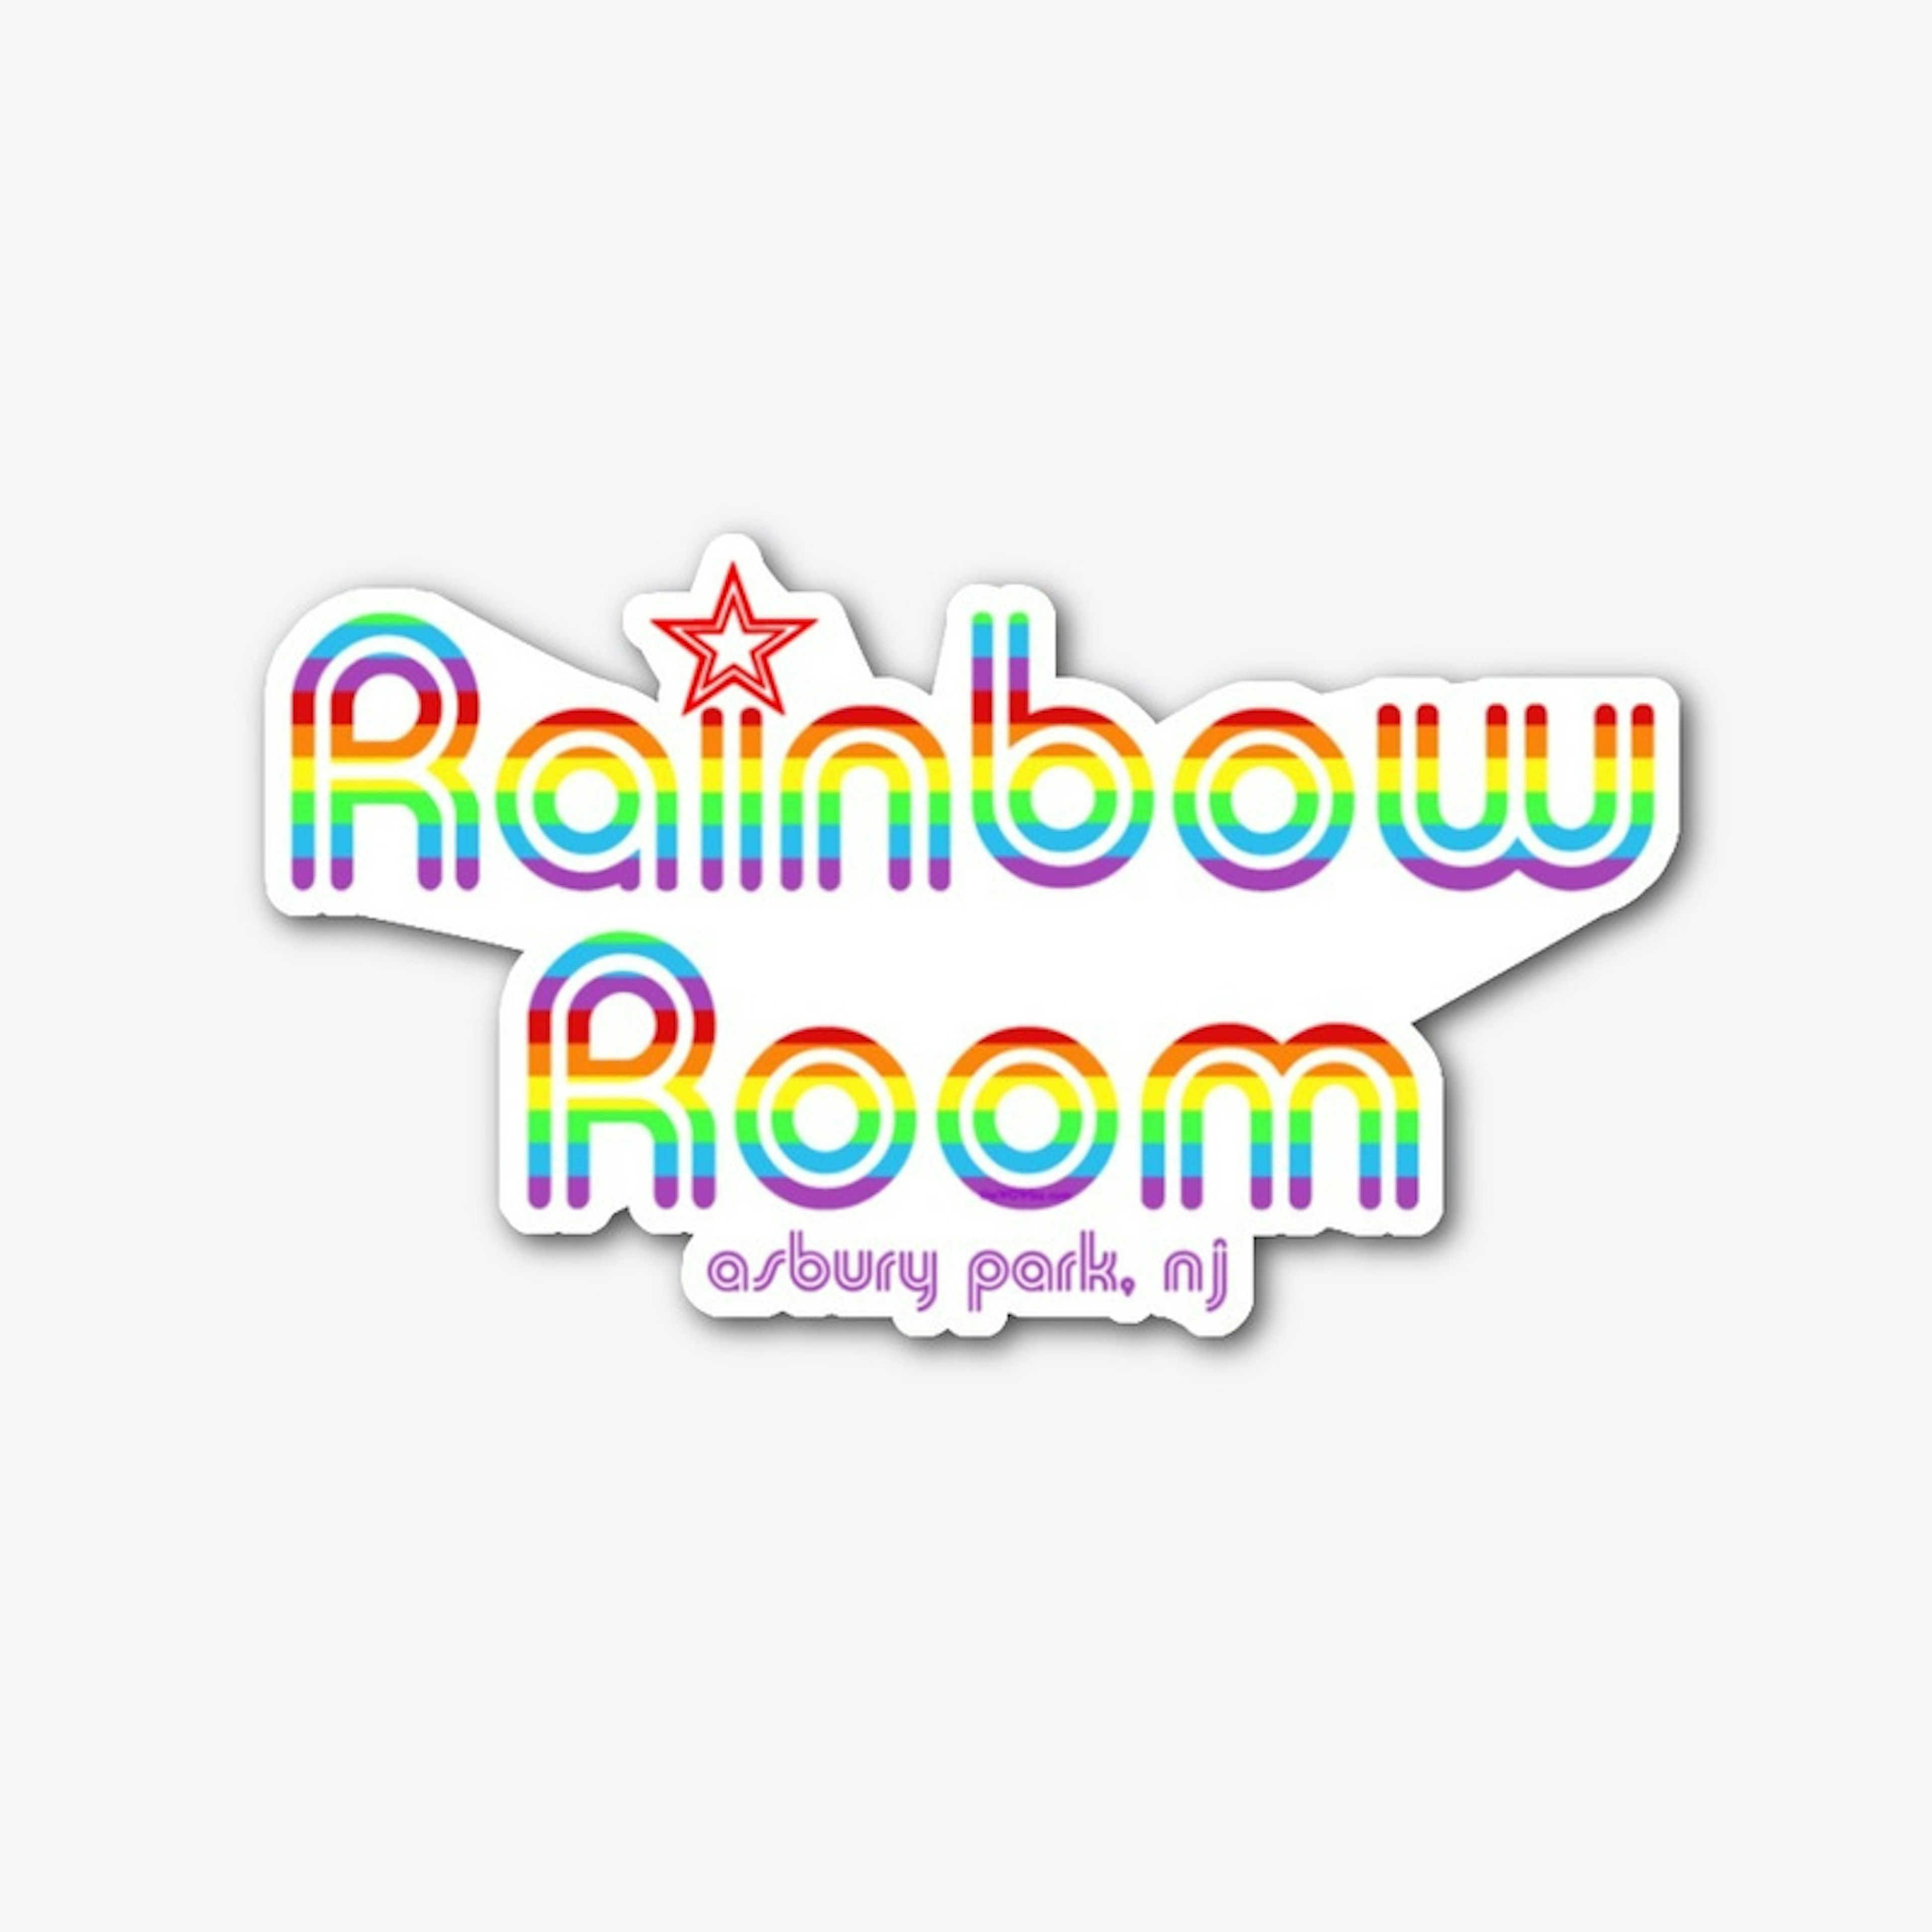 RainbowRoom